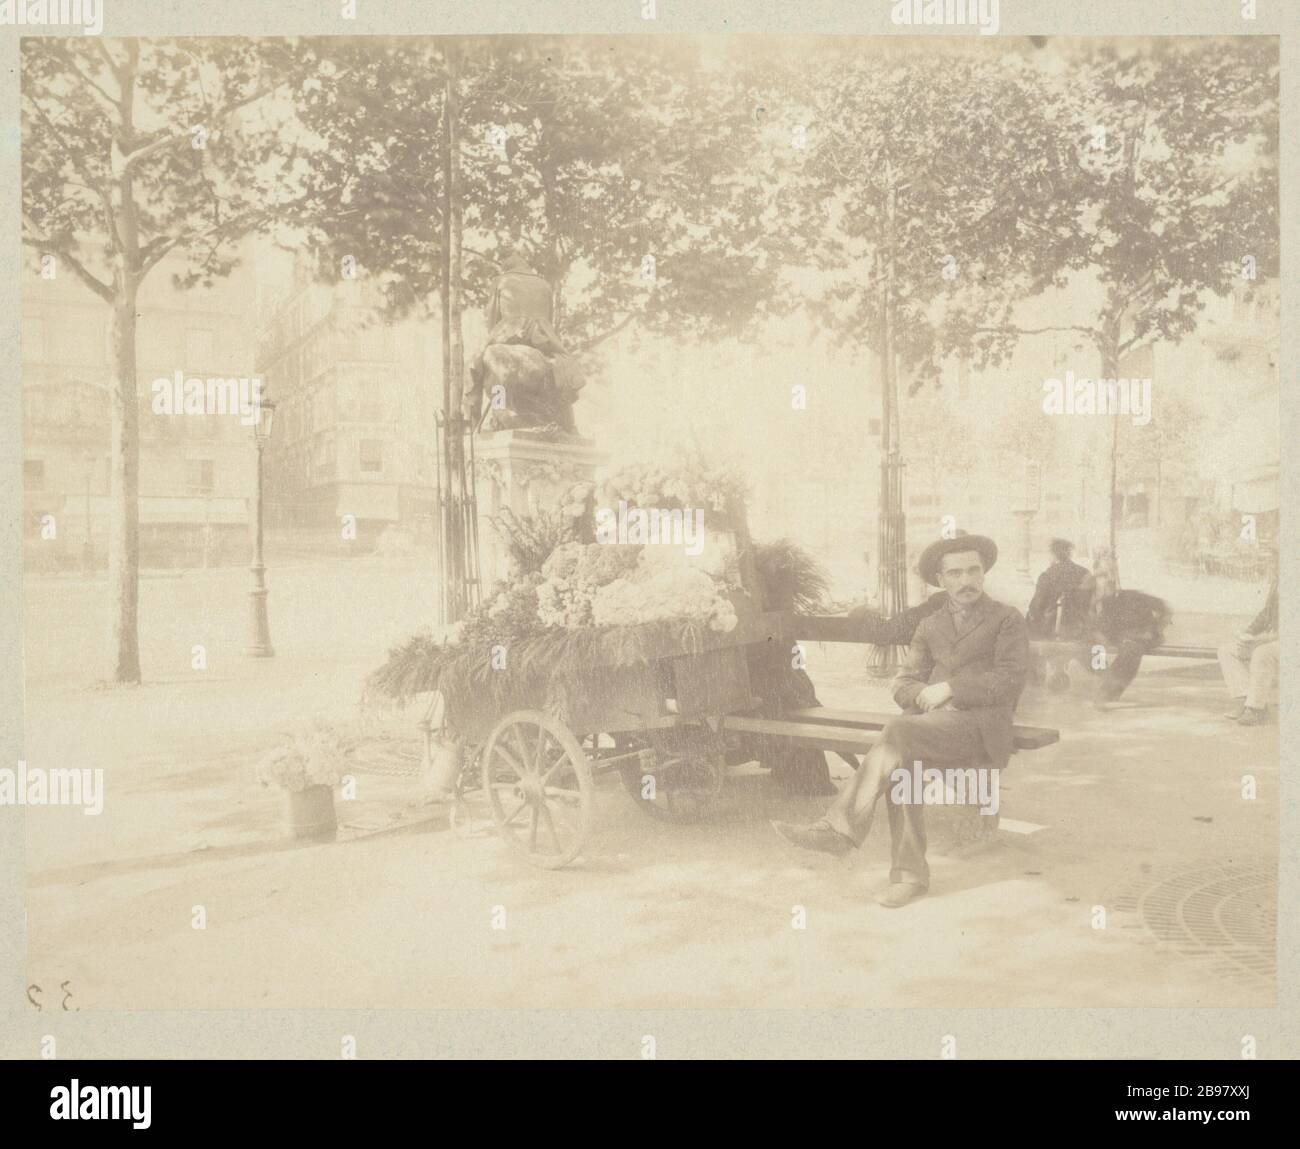 BOULEVARD DE CLICHY Boulevard de Clichy. Paris (IXème et XVIIIème arr.), 1898-1900. Photographie d'Eugène Atget (1857-1927). Paris, musée Carnavalet. Stockfoto